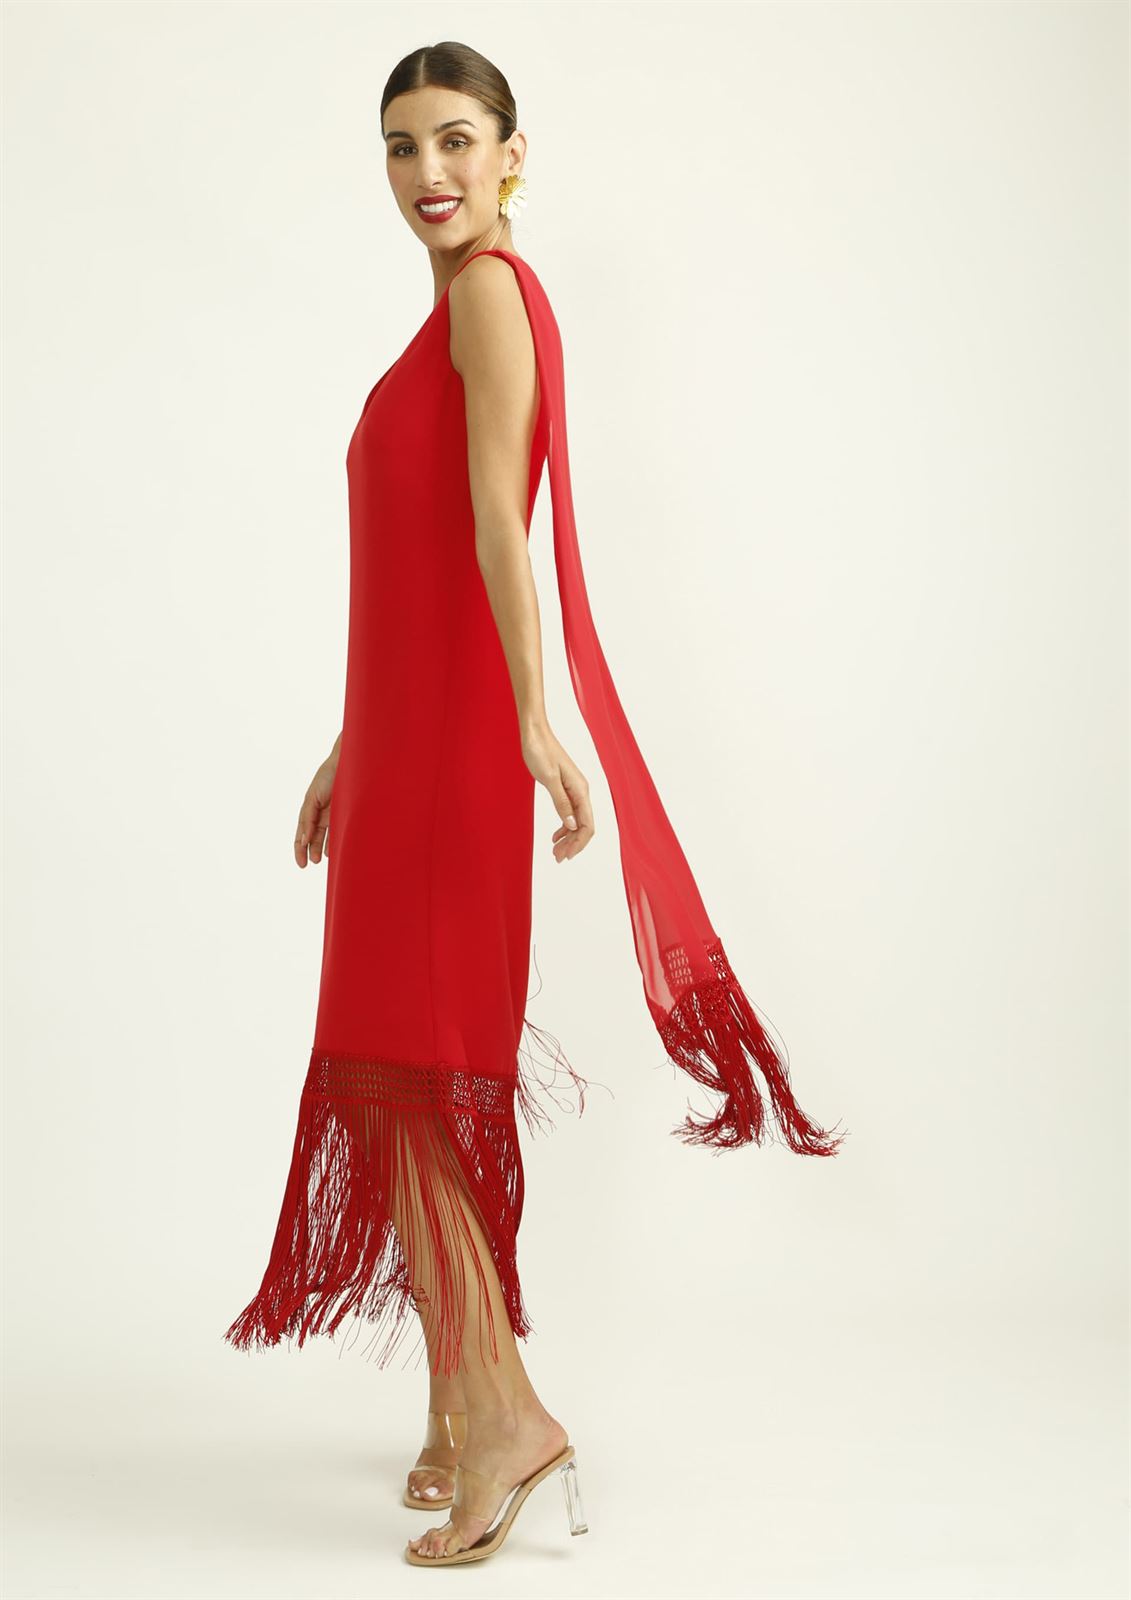 ALBA CONDE Vestido Rojo con Flecos en el Bajo - Imagen 3